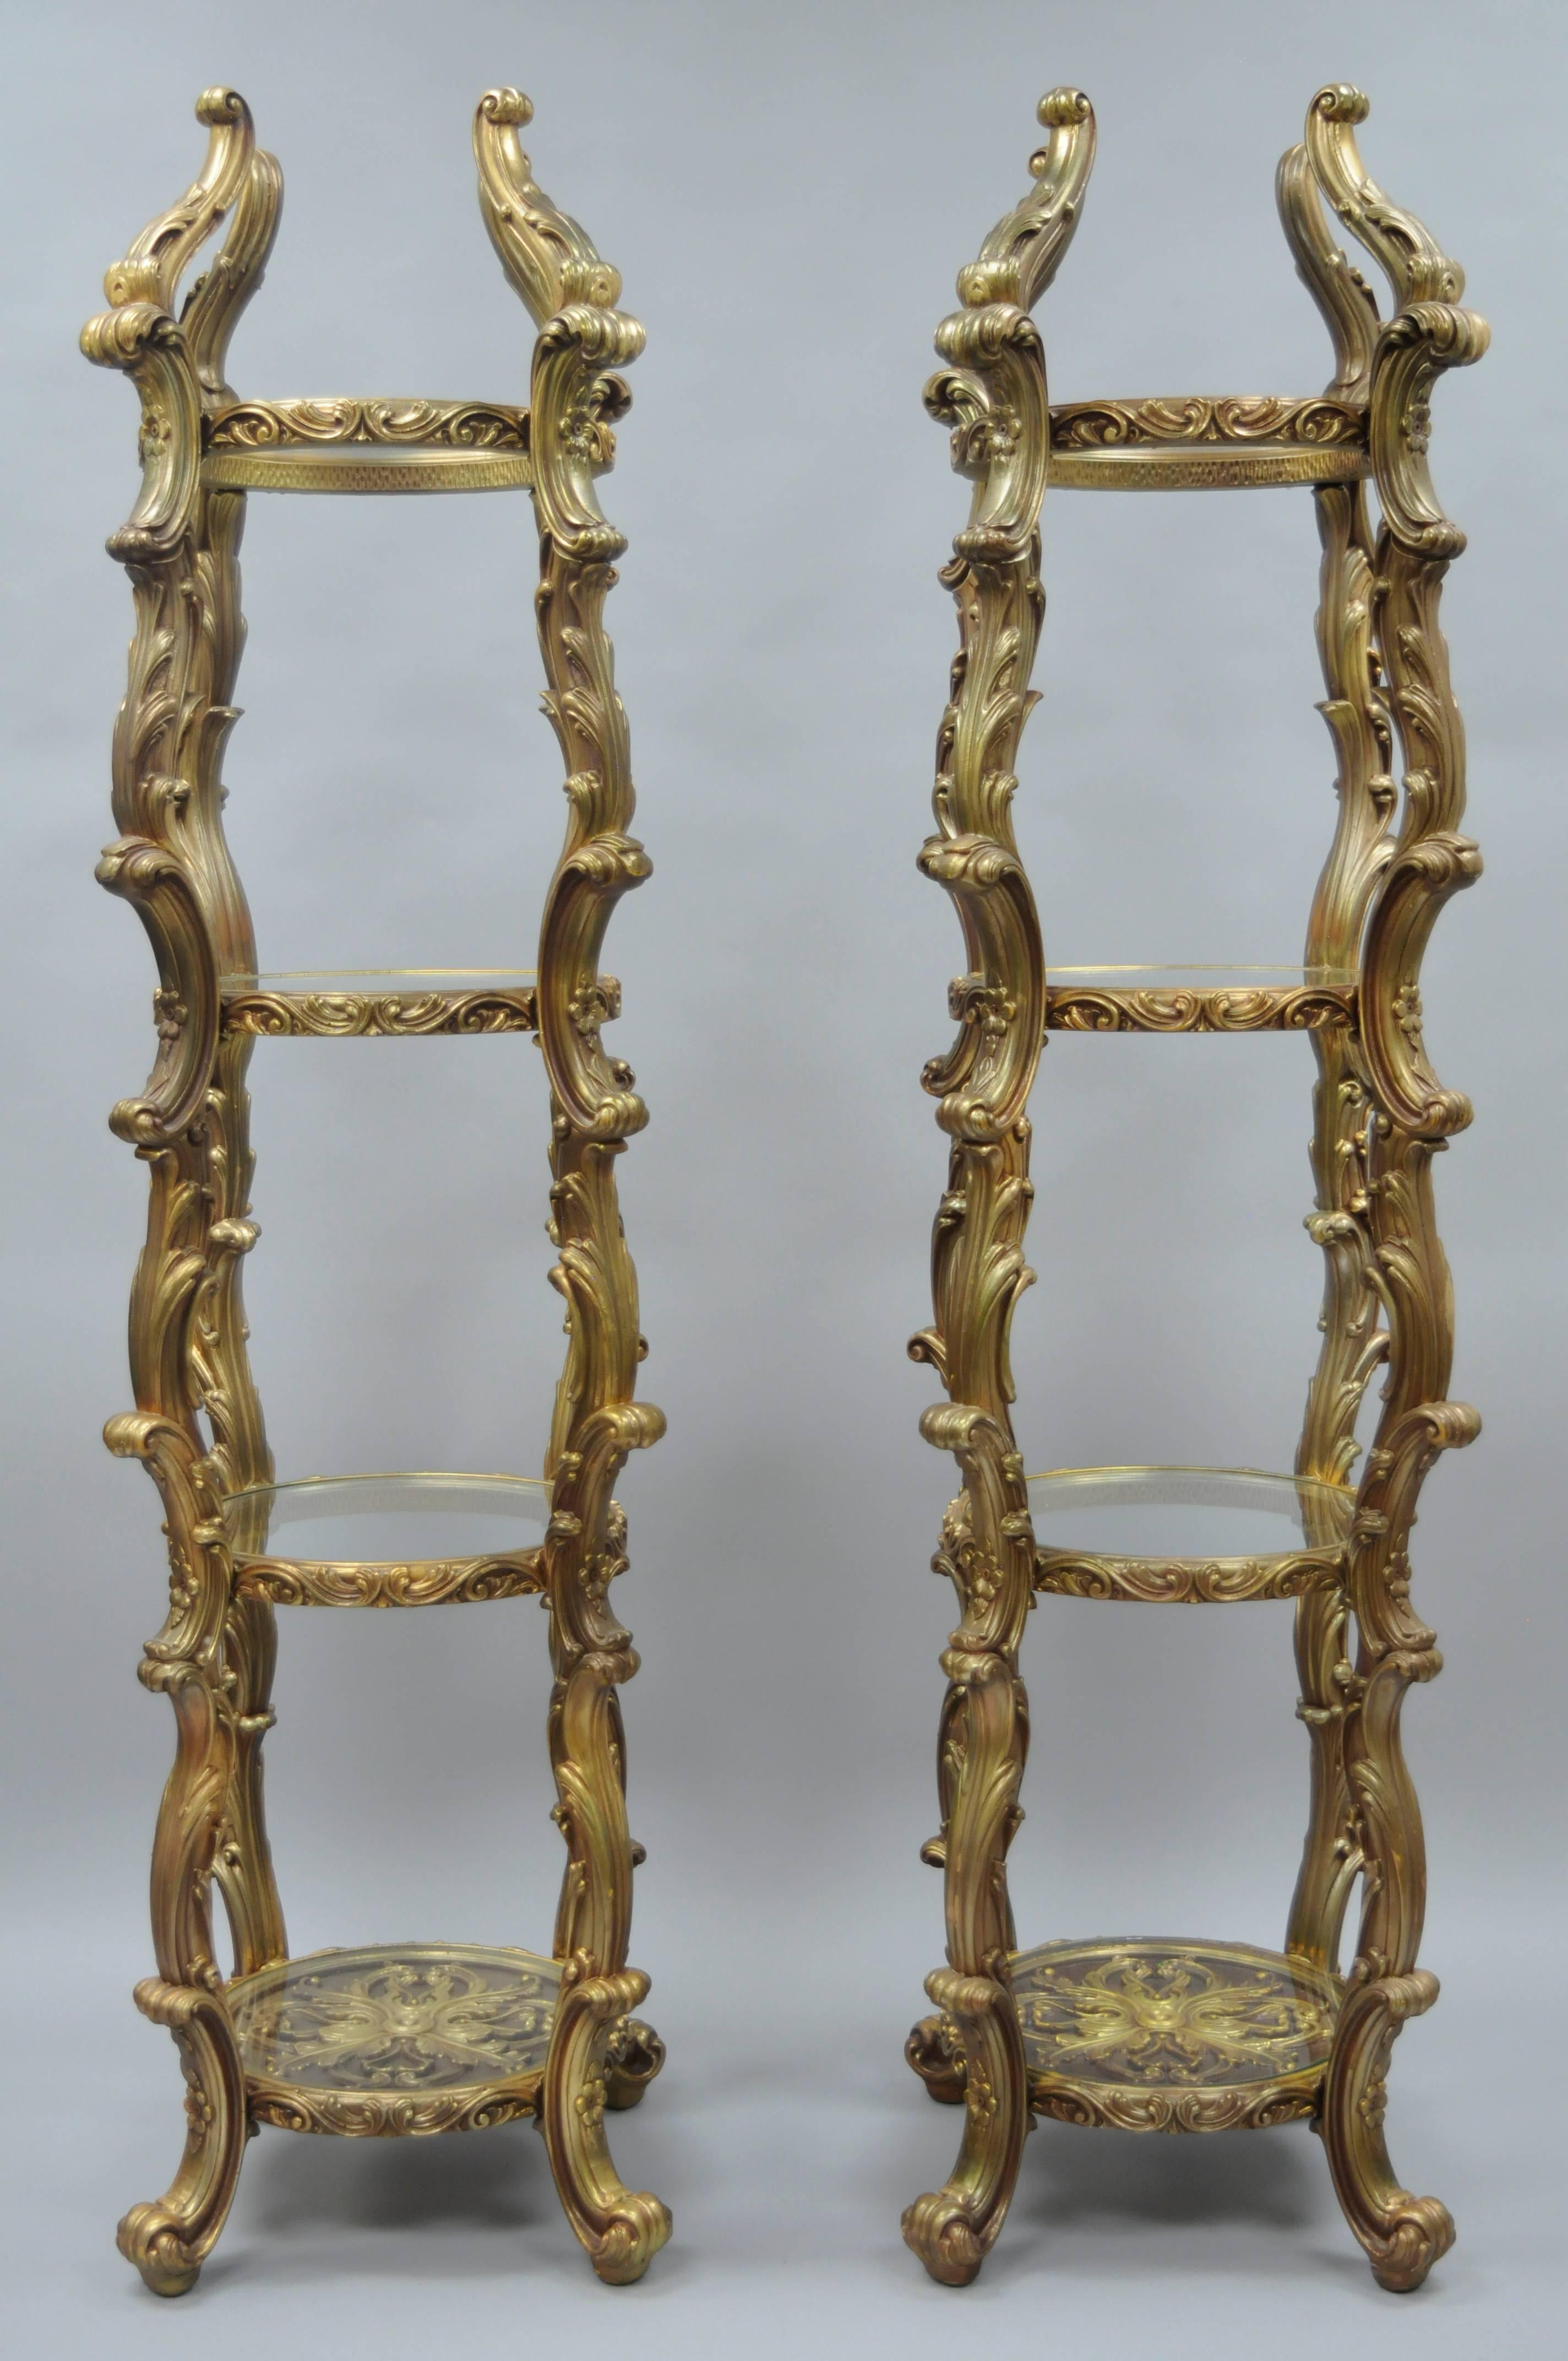 Ein Paar goldene Hollywood Regency Syroco Etageren im Vintage-Stil. Das Paar verfügt über schöne runde schmale Formen, ausgefallene Akanthusblatt-Design geformten Rahmen, vier runde Glasböden mit dem untersten Regal mit verzierten Details unter dem